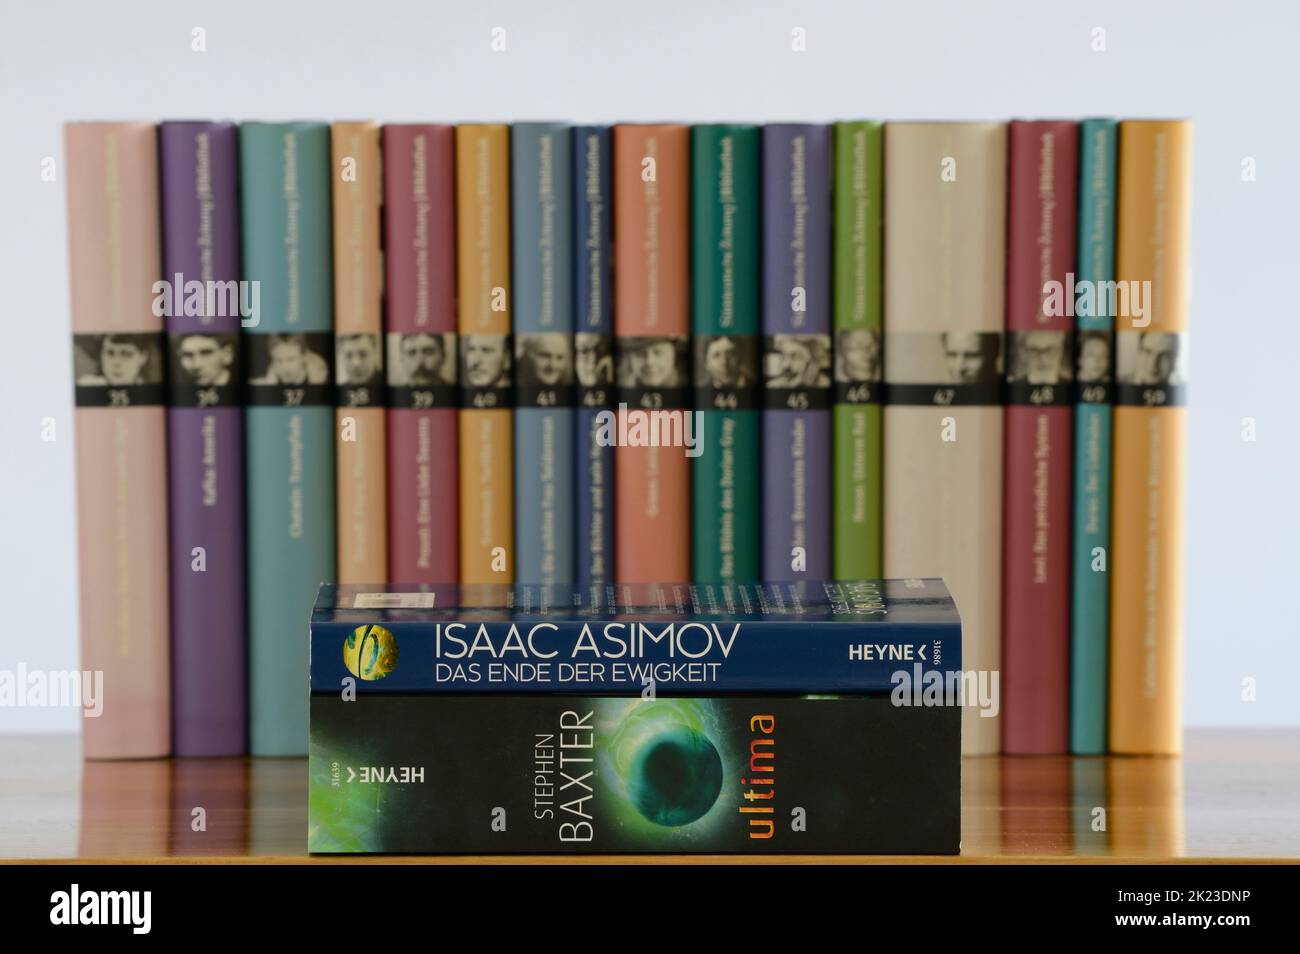 Stephen Baxter ultima novel e Isaac Asimov la fine dell'eternità. Si noti che non ho una release di proprietà su questa immagine e può essere utilizzata per la modifica Foto Stock